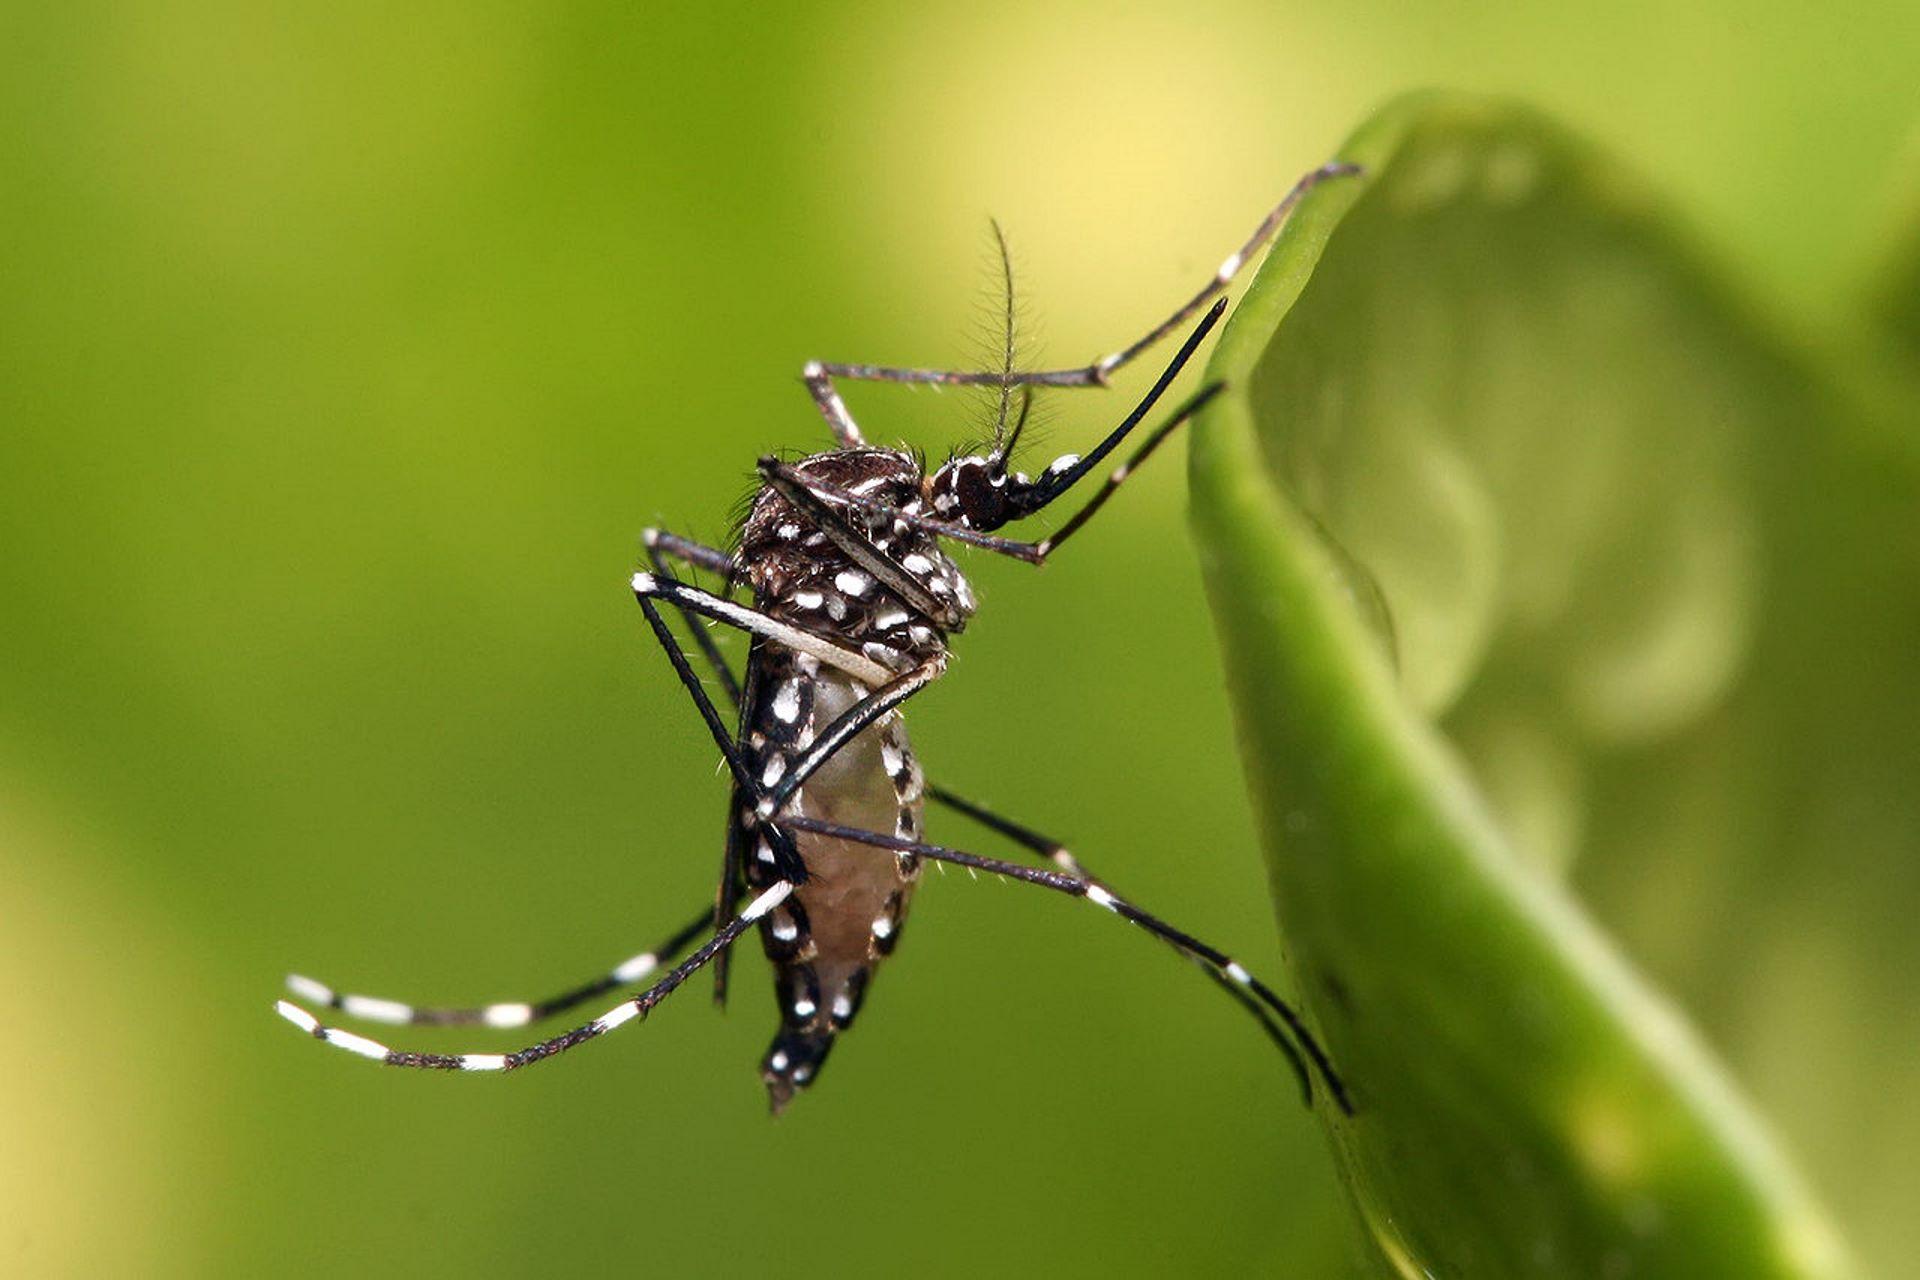 O Aedes aegypti é um exemplo de espécie exótica invasora que causa grande impacto na economia brasileira